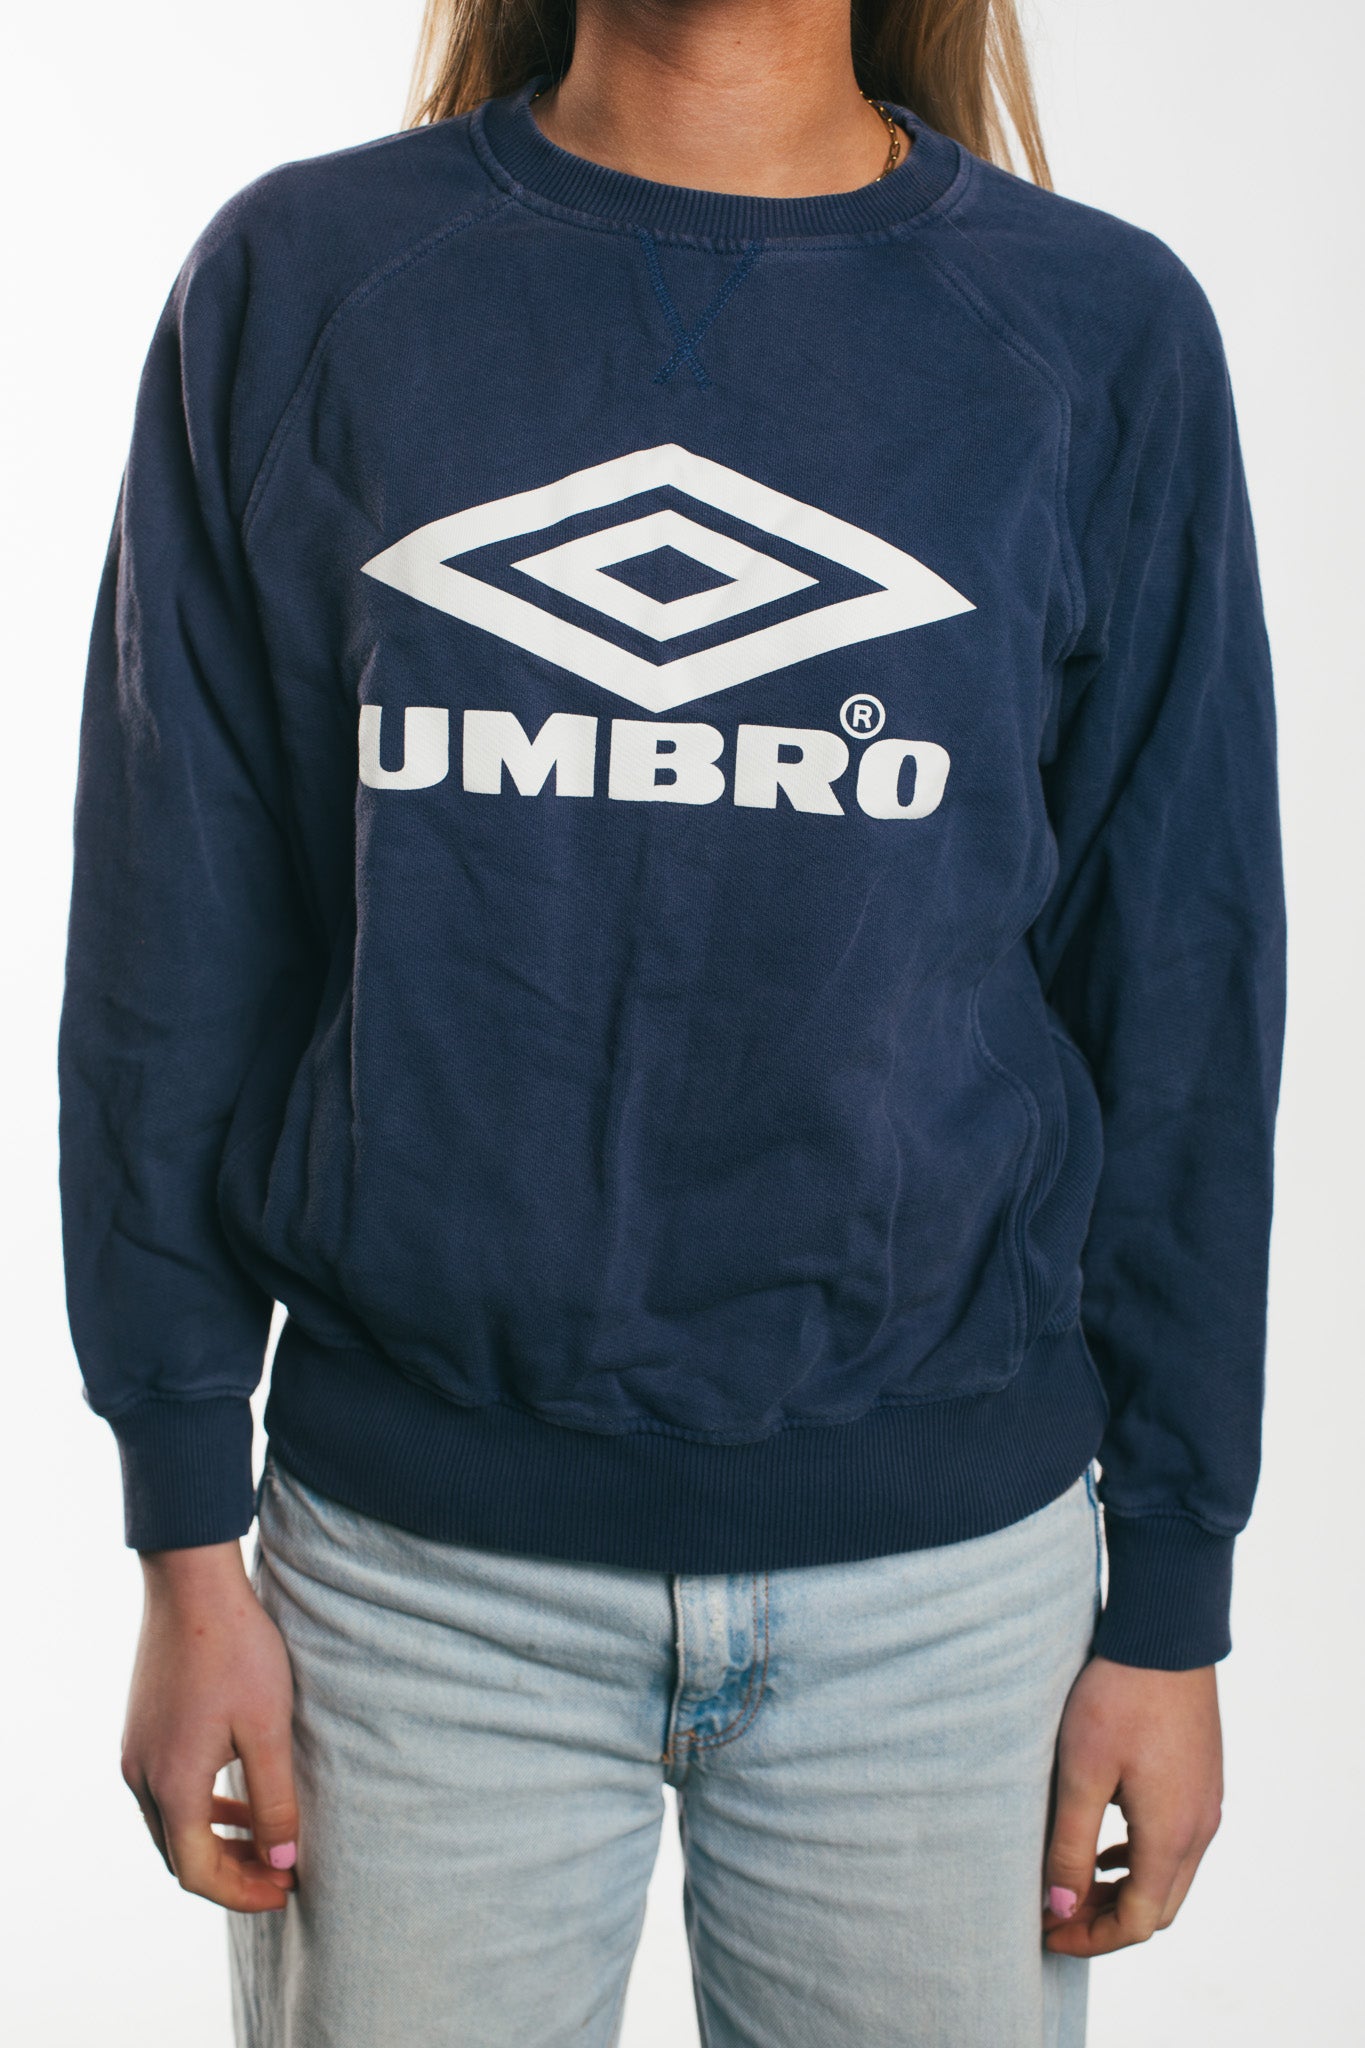 Umbro - Sweatshirt (XS)